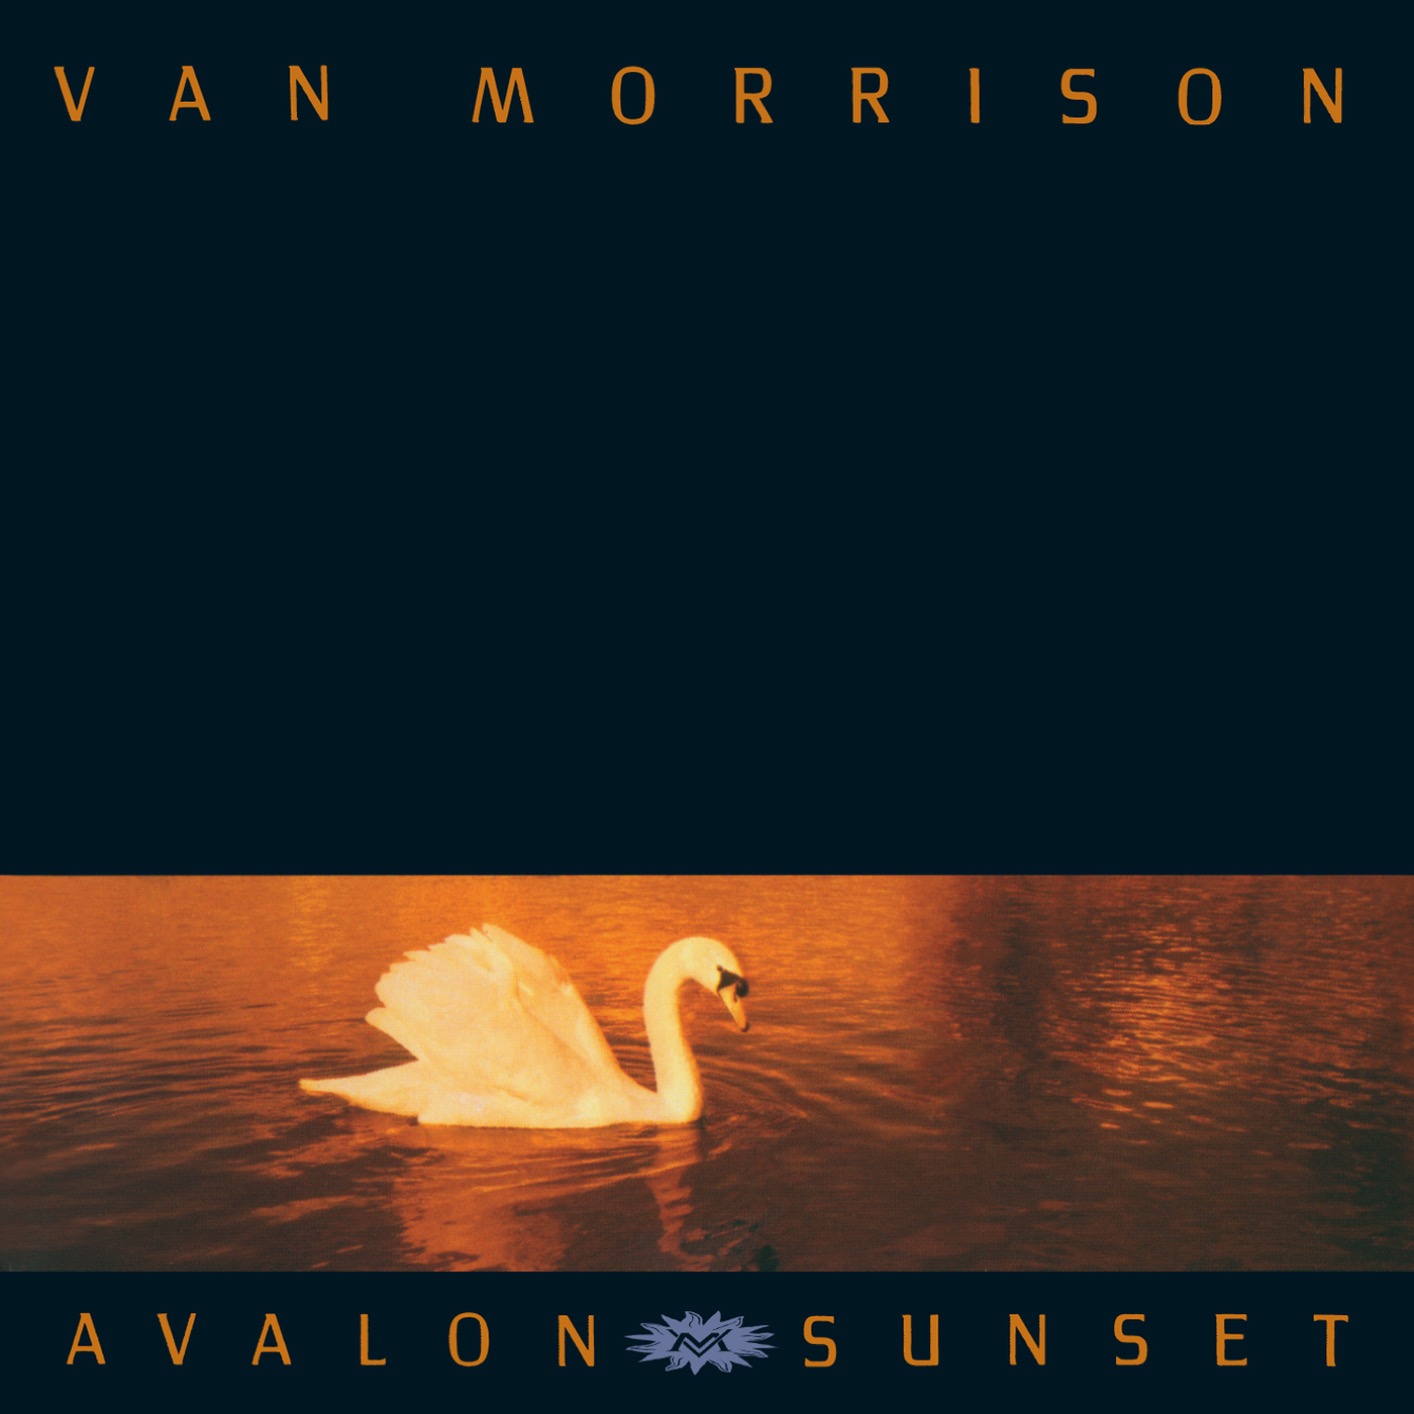 Van Morrison – Avalon Sunset (Remastered) (1989/2020) [FLAC 24bit/96kHz]